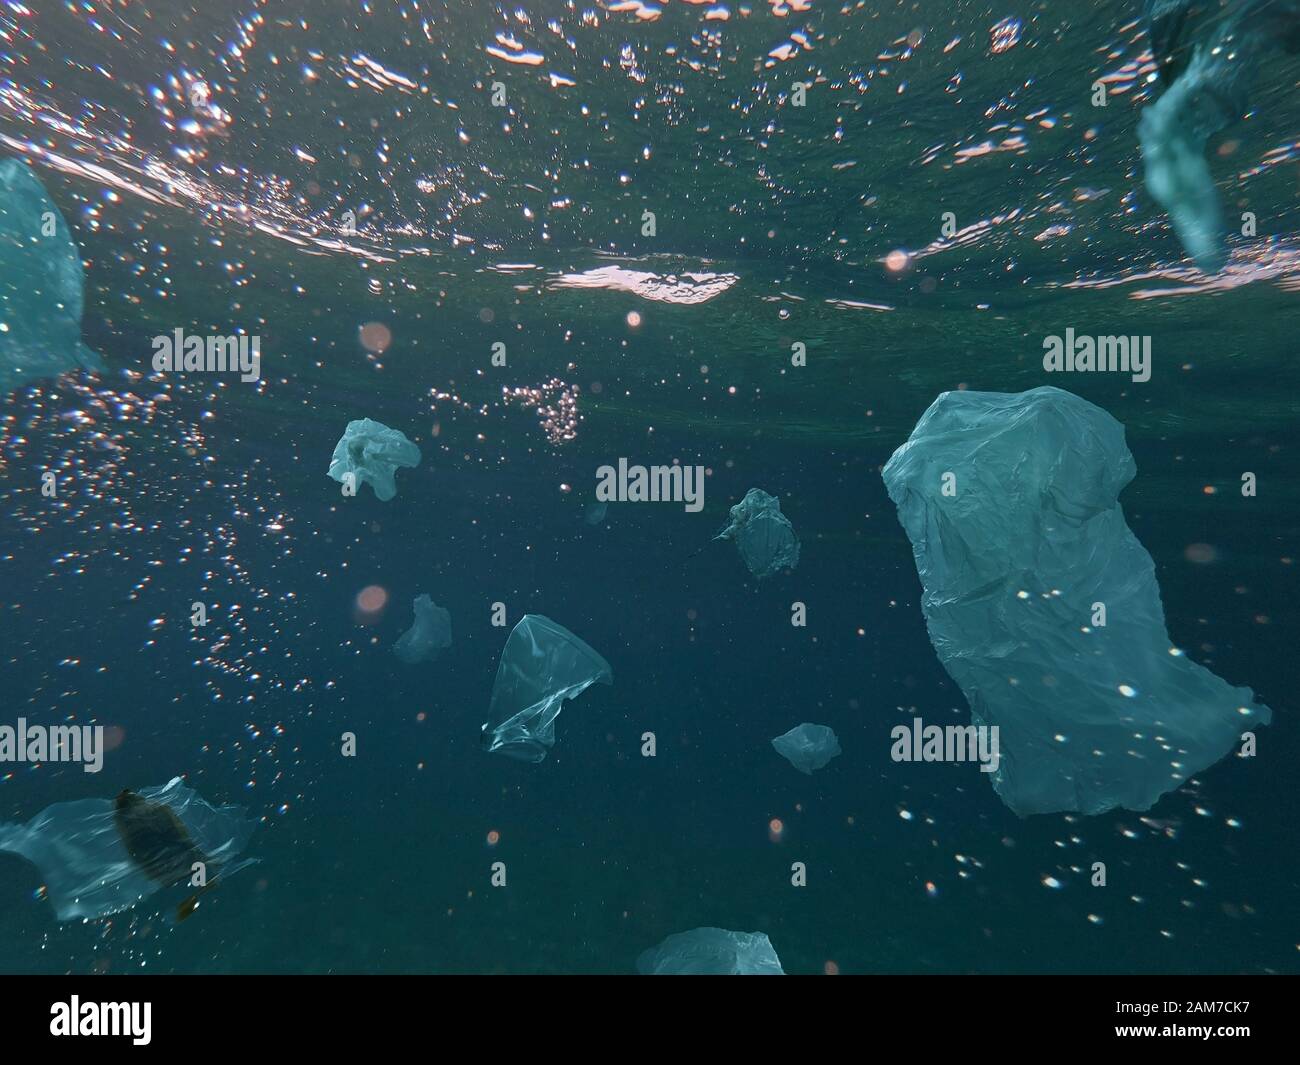 Déchets toxiques de plastique flottant sous l'eau dans l'océan. Problème environnemental mondial. Banque D'Images